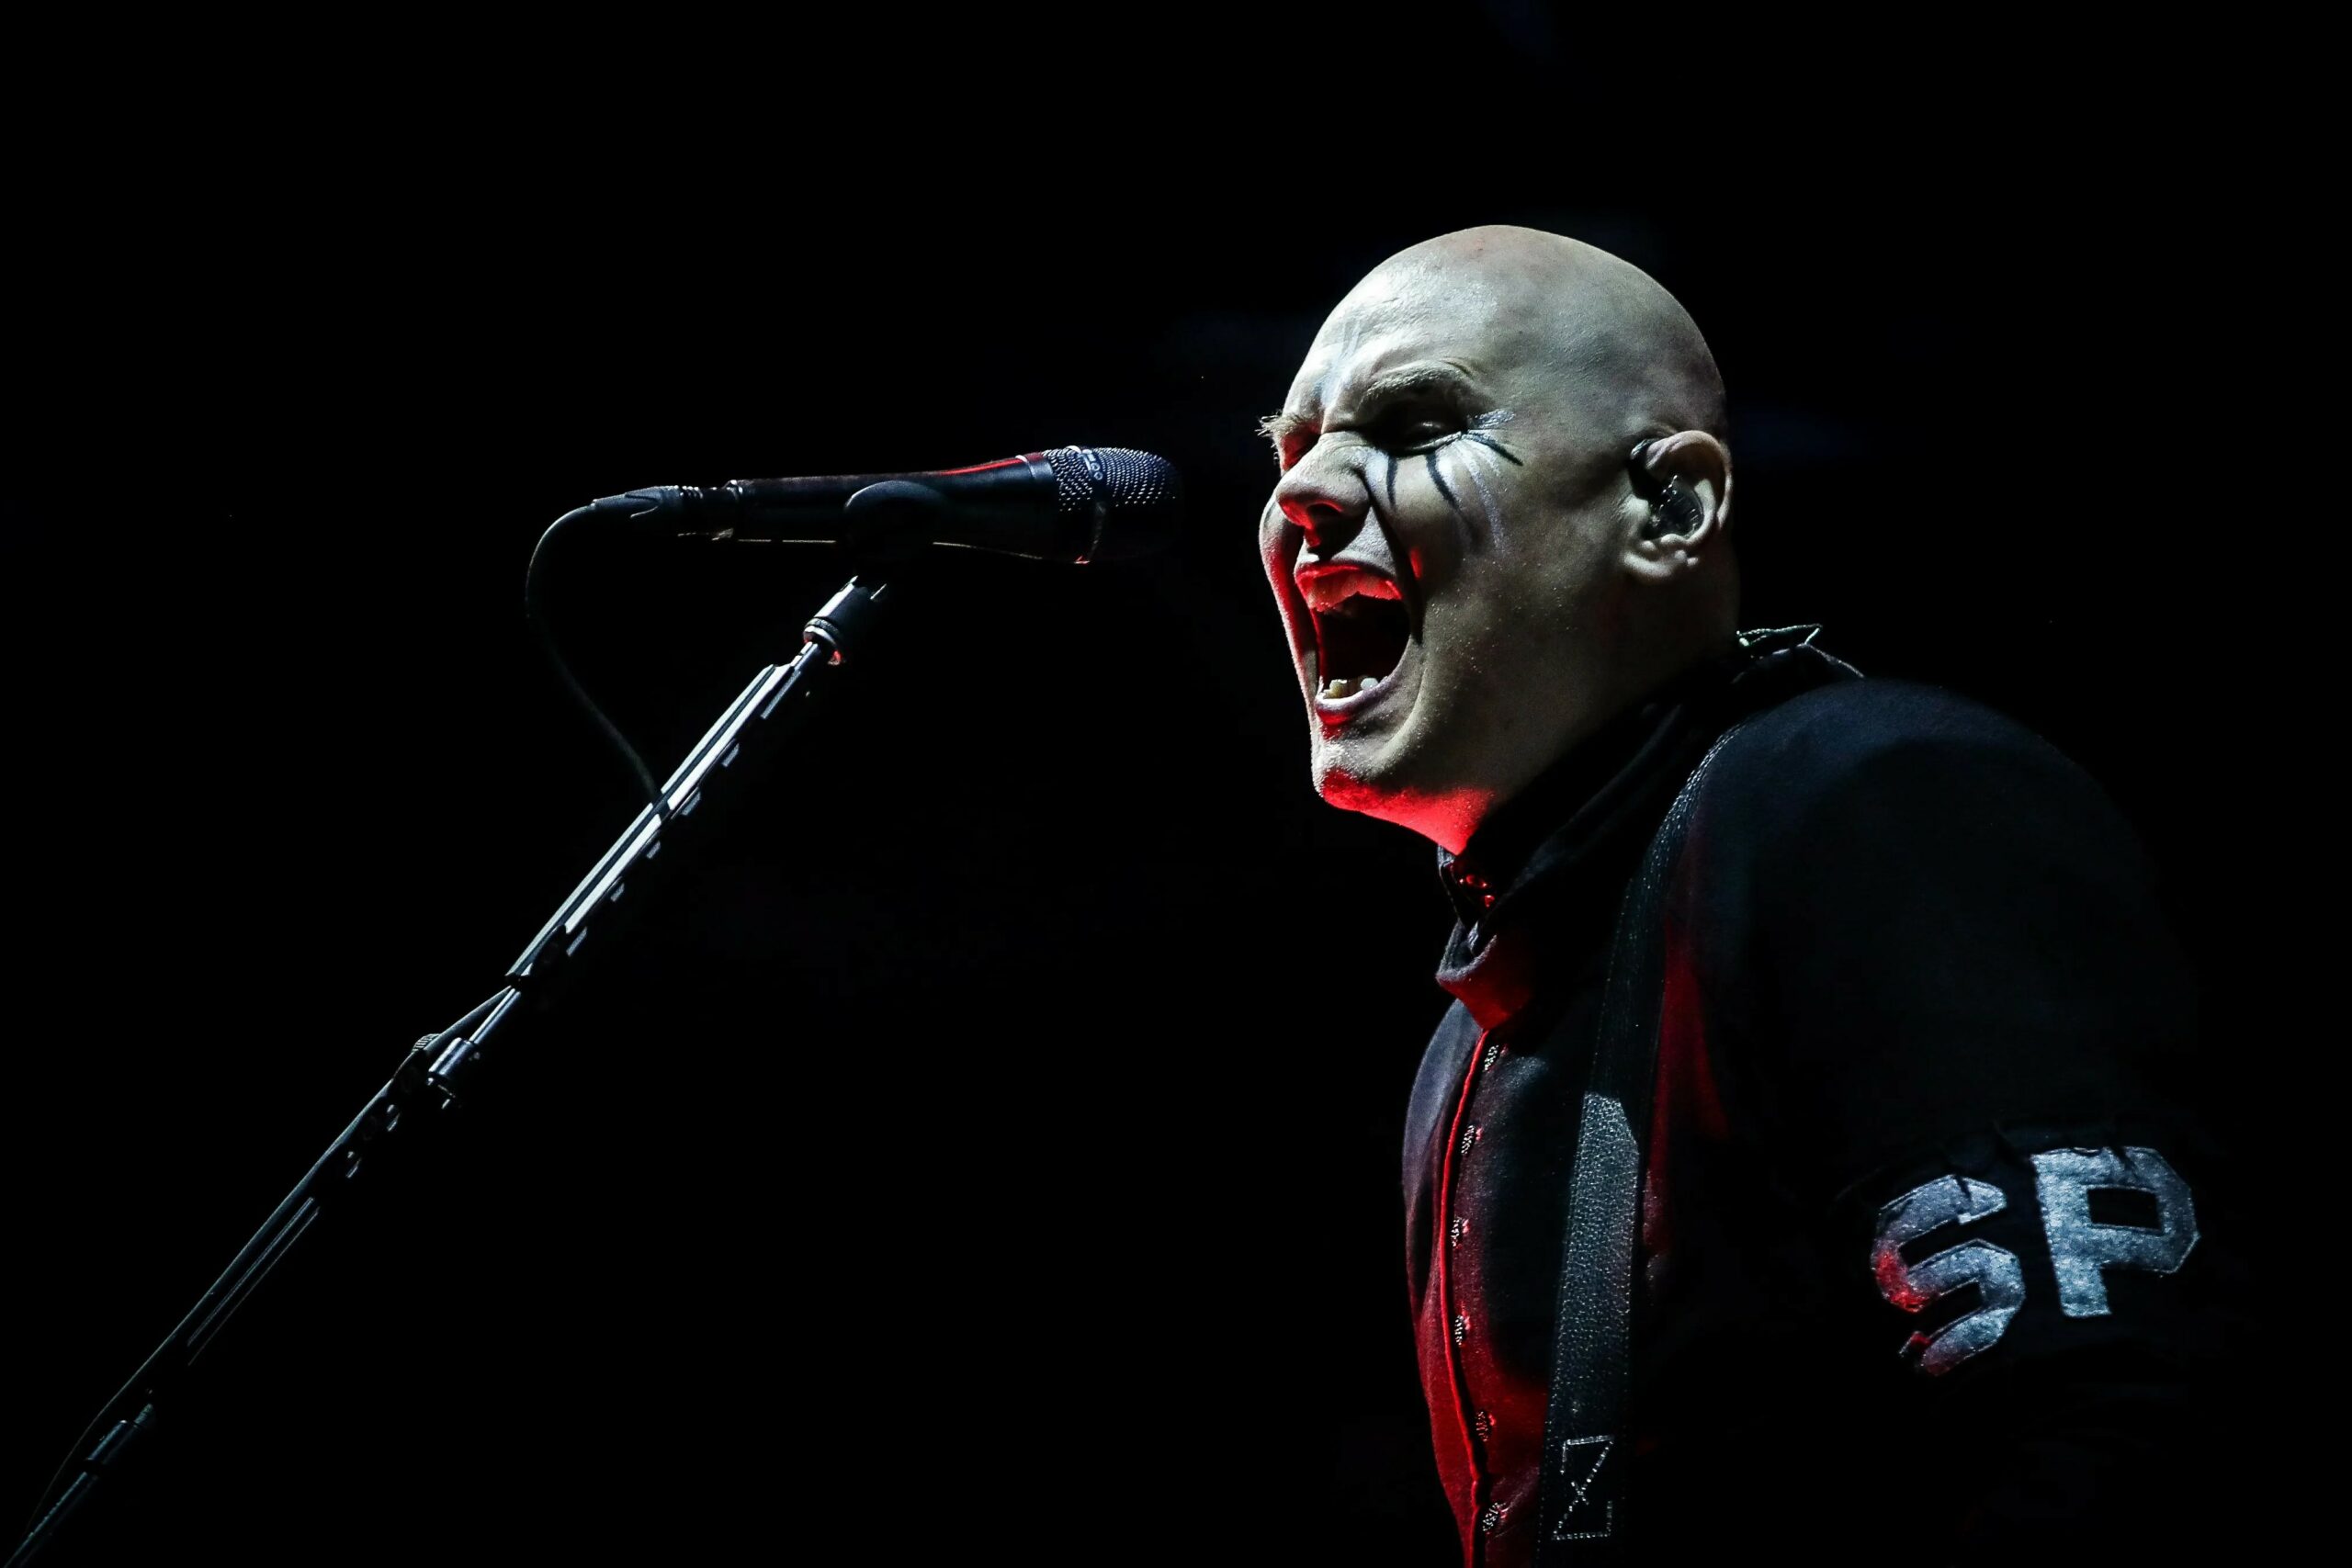 Billy Corgan The Smashing Pumpkins 10.000 søknader ny gitarist